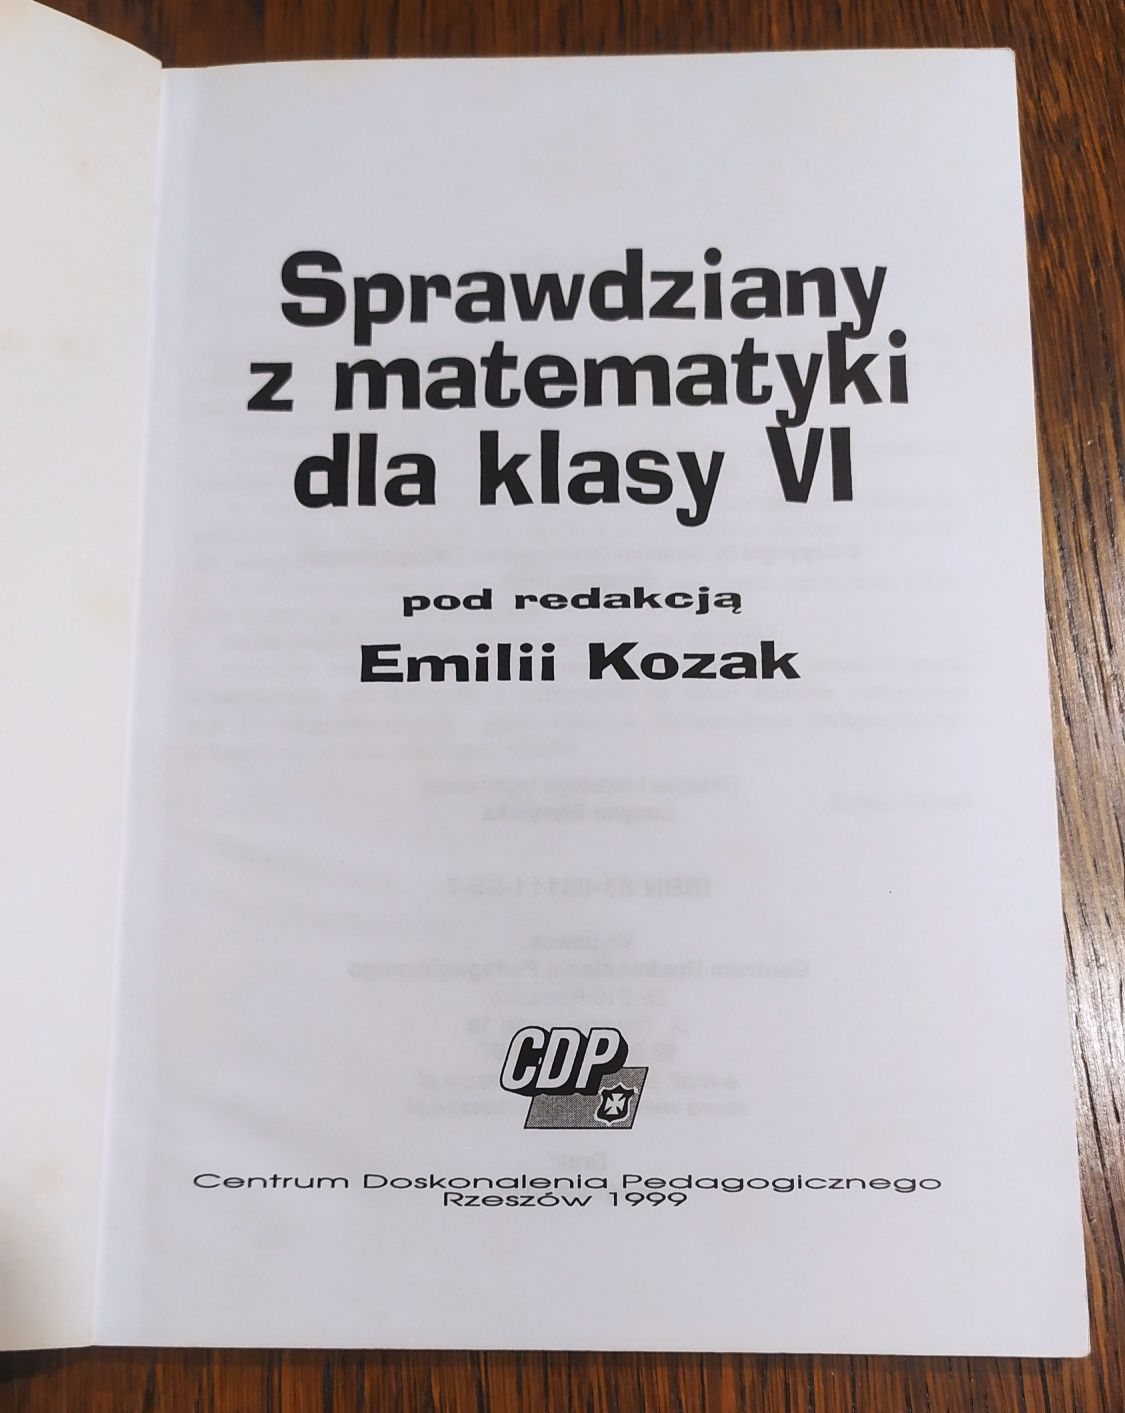 Sprawdziany z matematyki dla klasy VI - CDP - Emilia Kozak